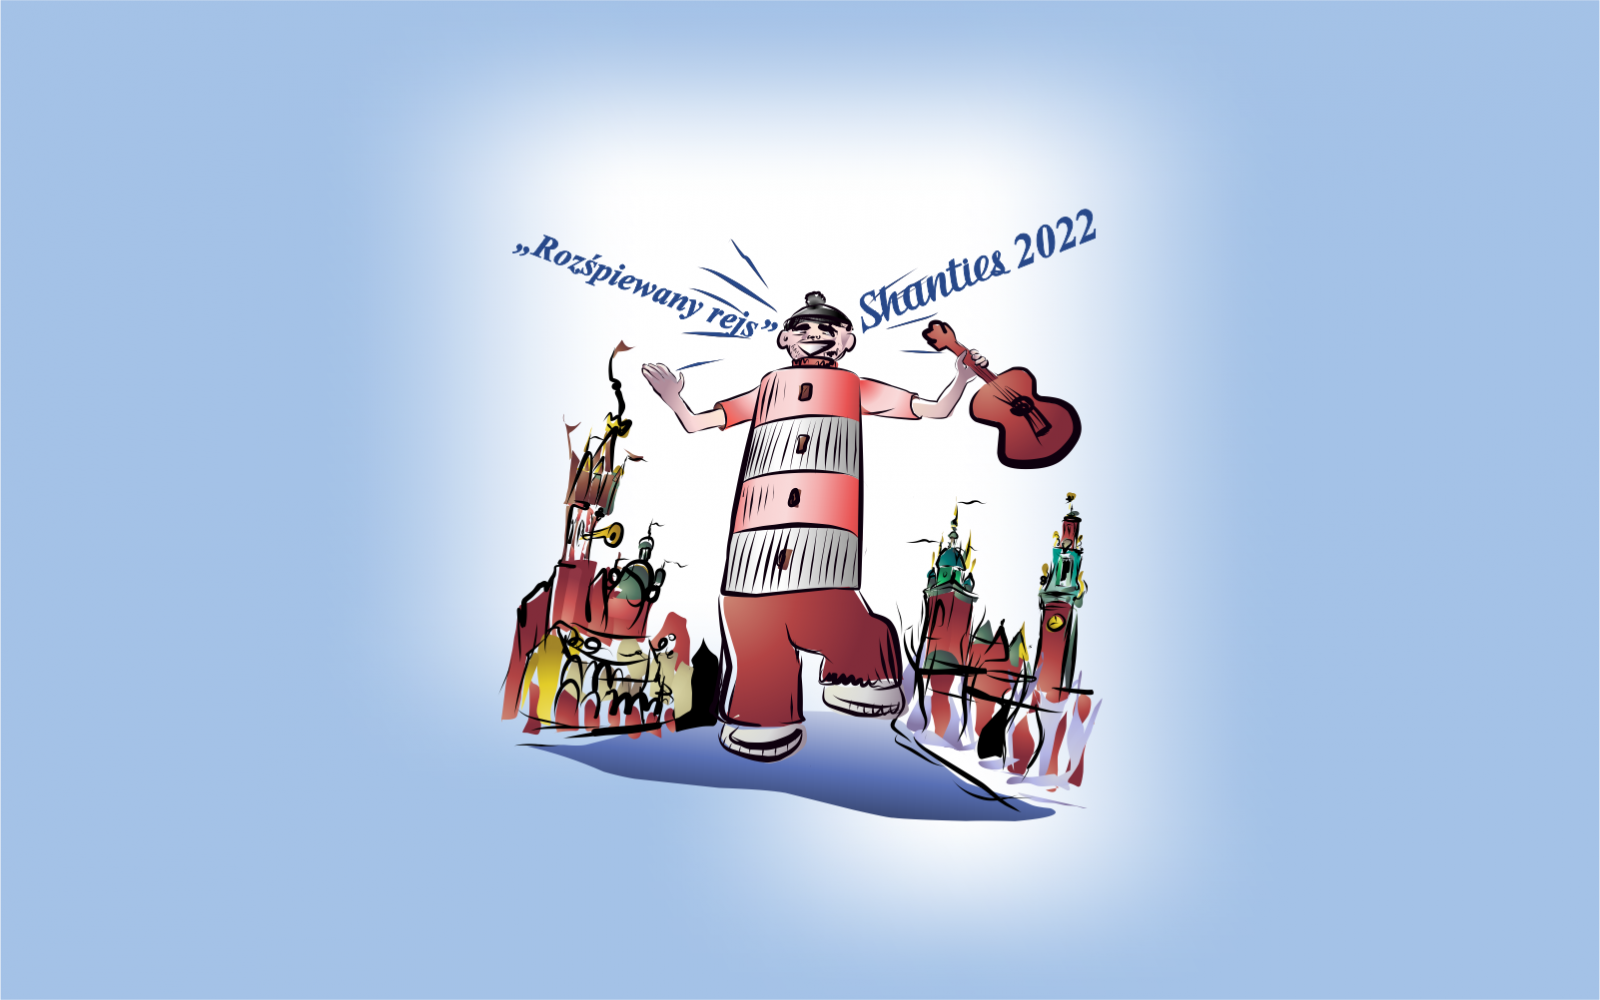 XLI Międzynarodowy Festiwal Piosenki Żeglarskiej Shanties 2022